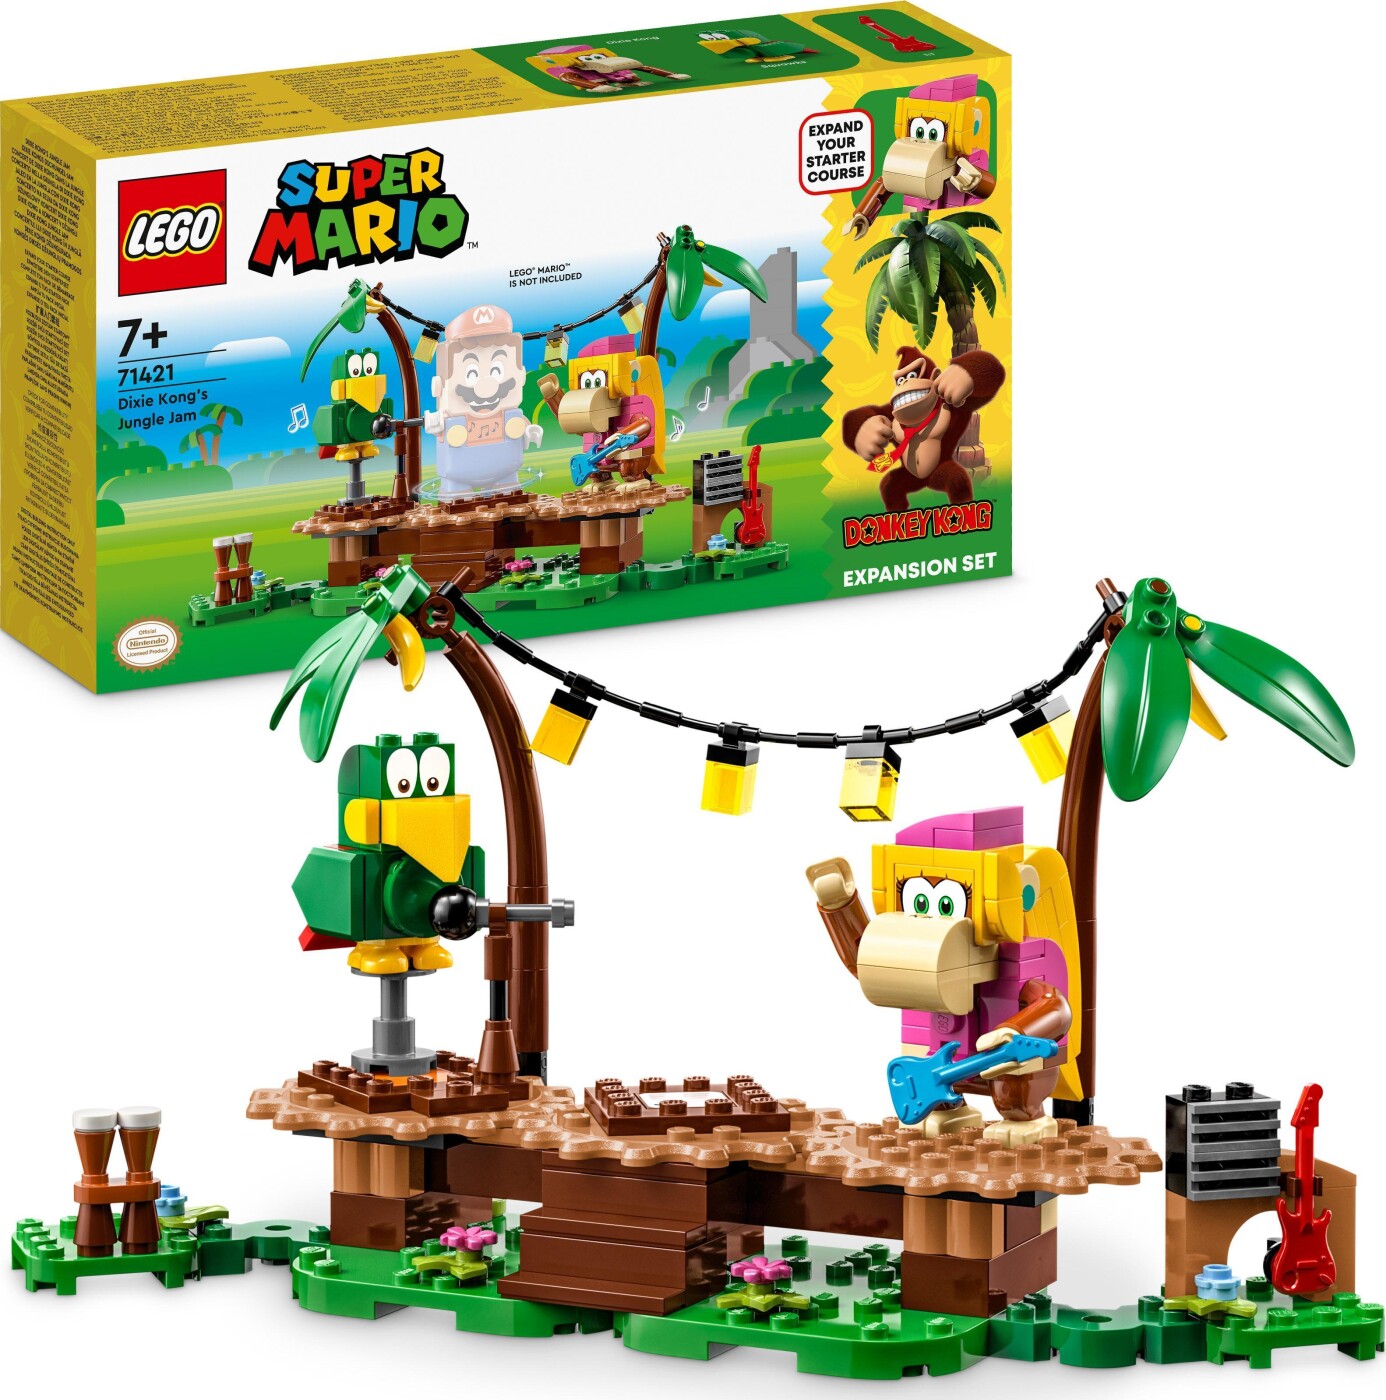 Billede af Lego Super Mario - Dixie Kongs Jungle Jam Udvidelsessæt - 71421 hos Gucca.dk